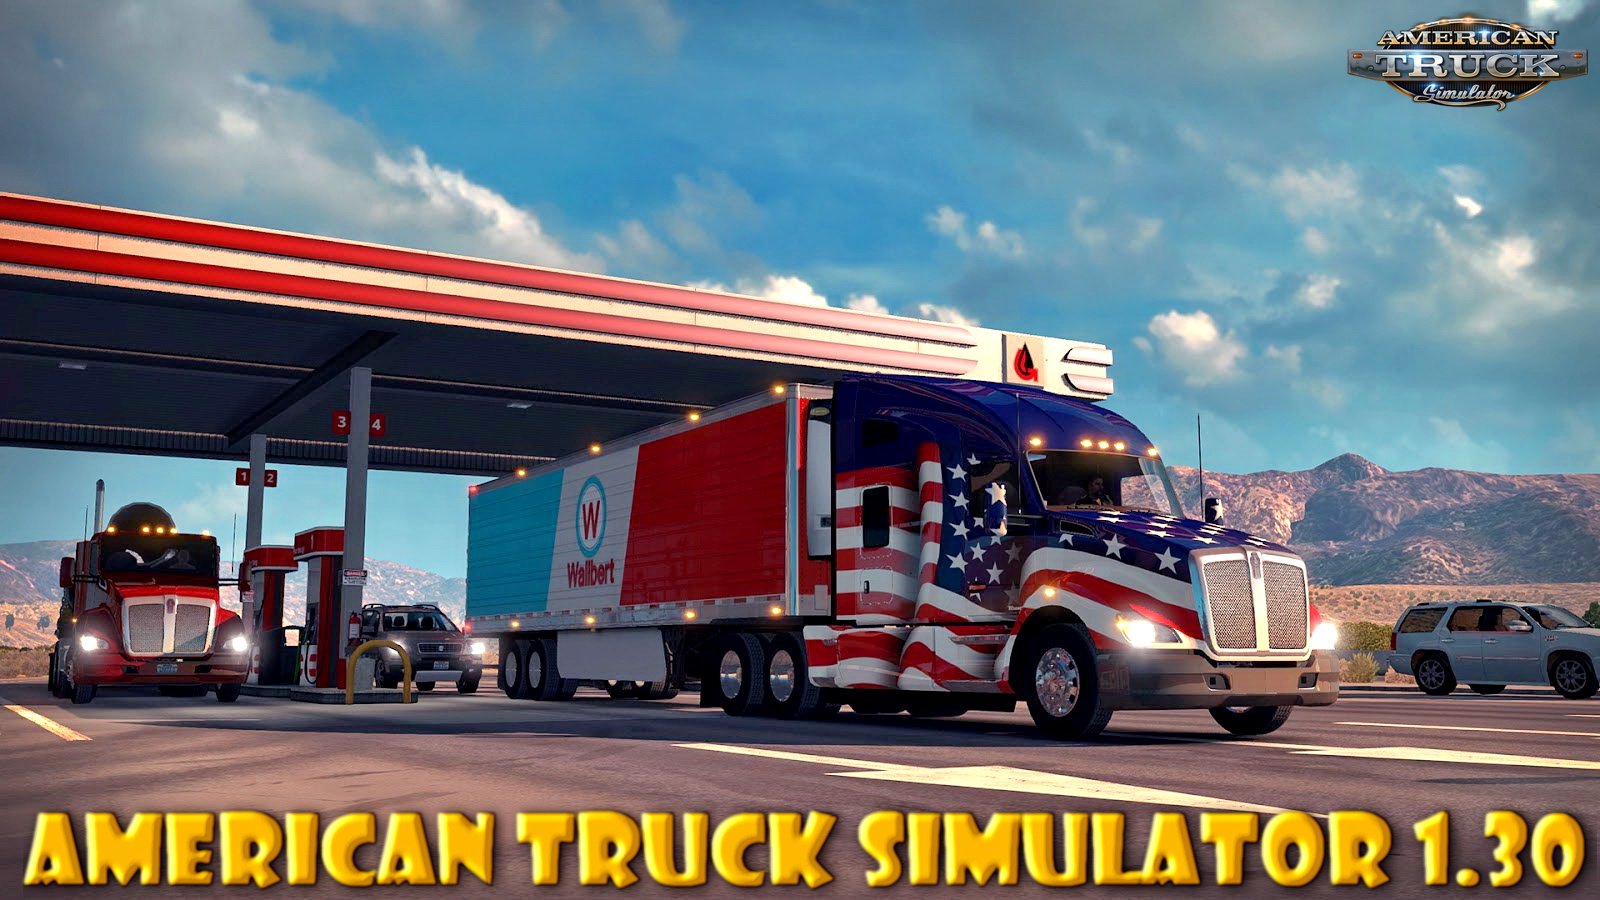 American Truck Simulator 1.30 Update